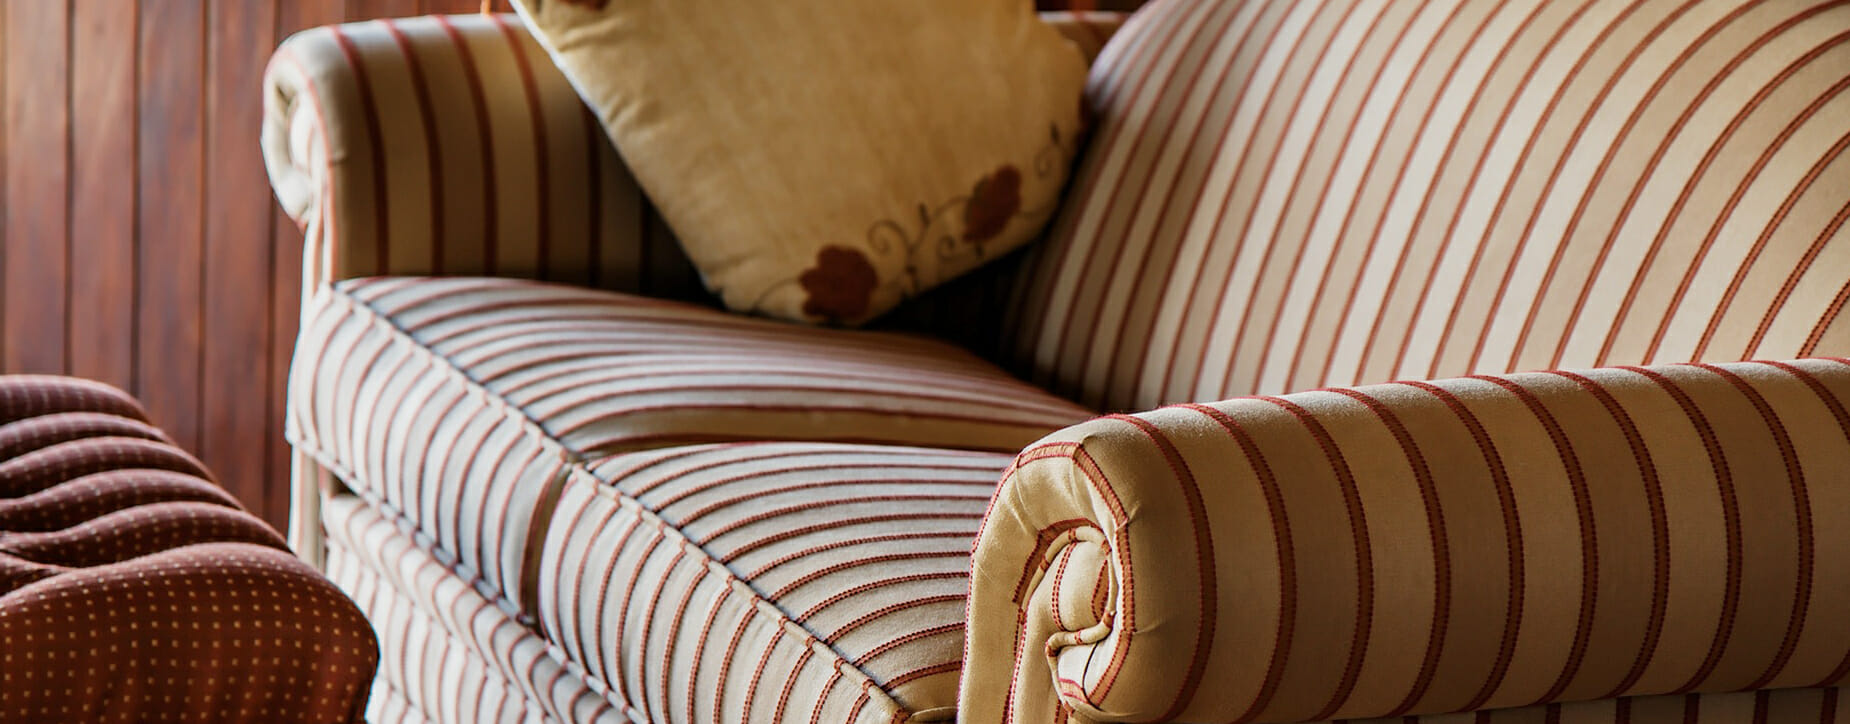 Upholstery sofa modern